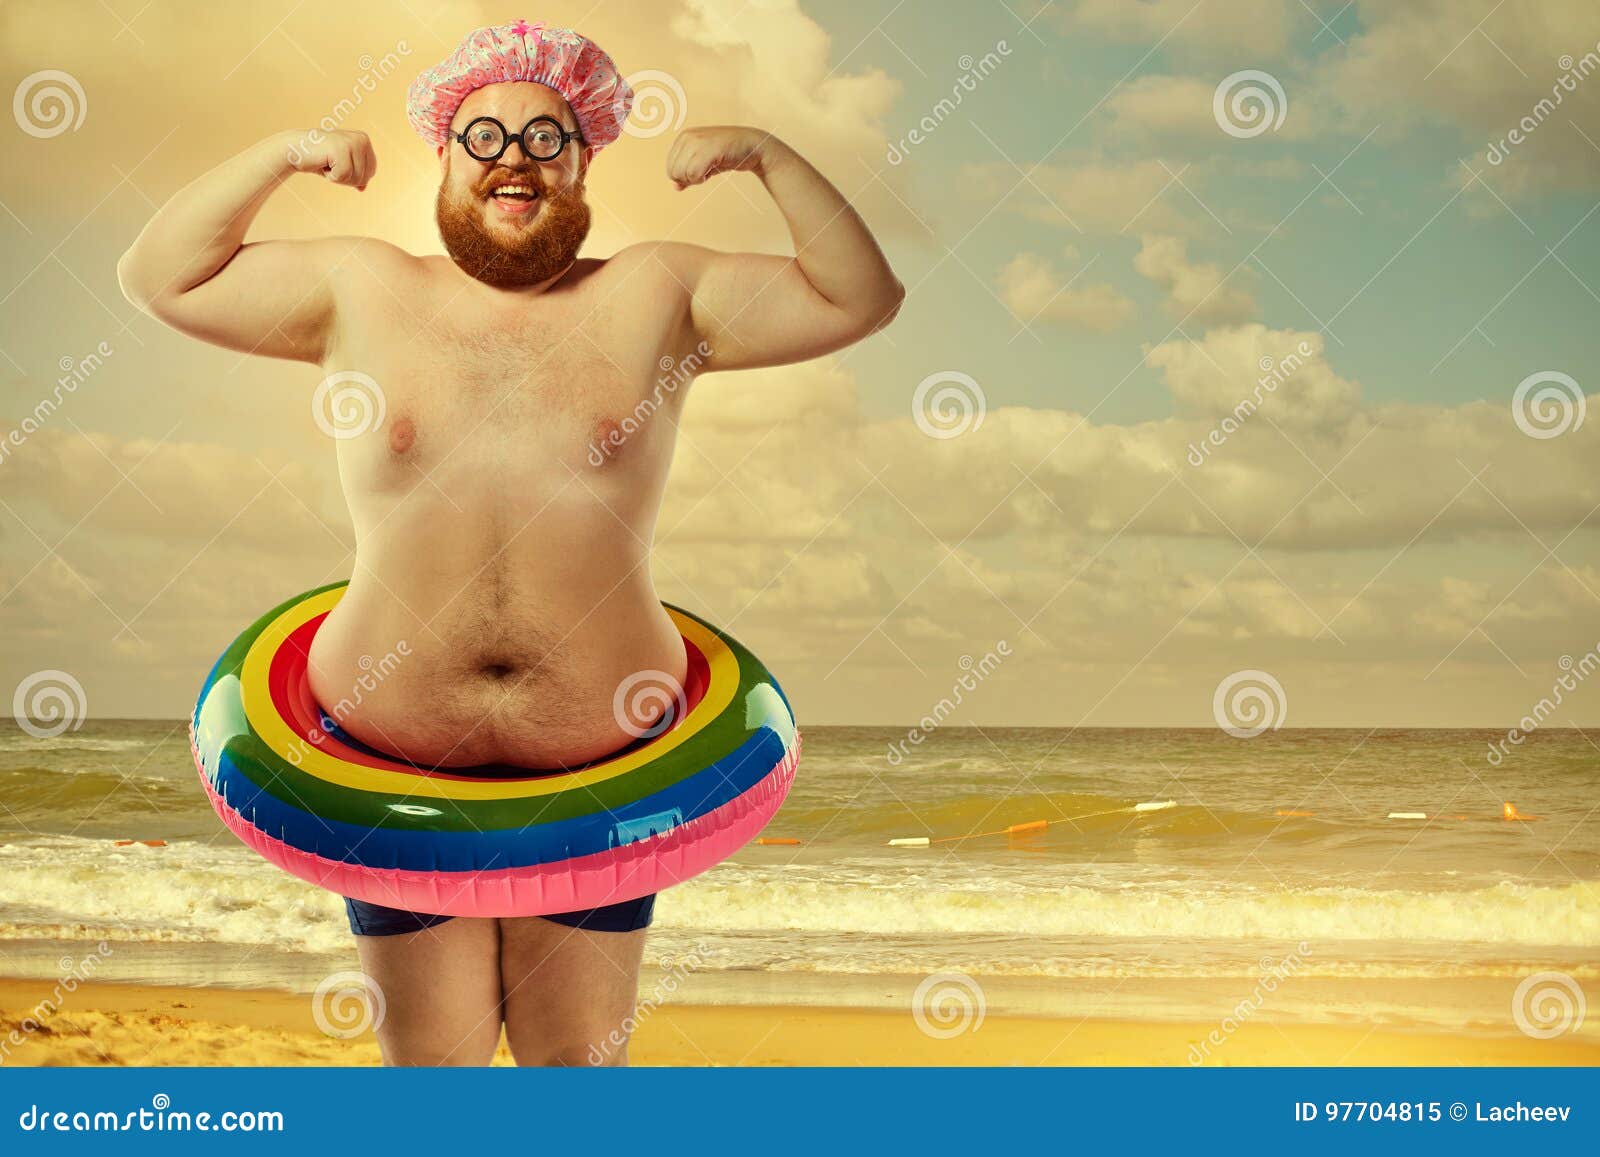 Hombre Gordo Divertido En Un Traje De Baño Con Círculo Inflable En El Imagen de archivo Imagen de anormal, individuo: 97704815